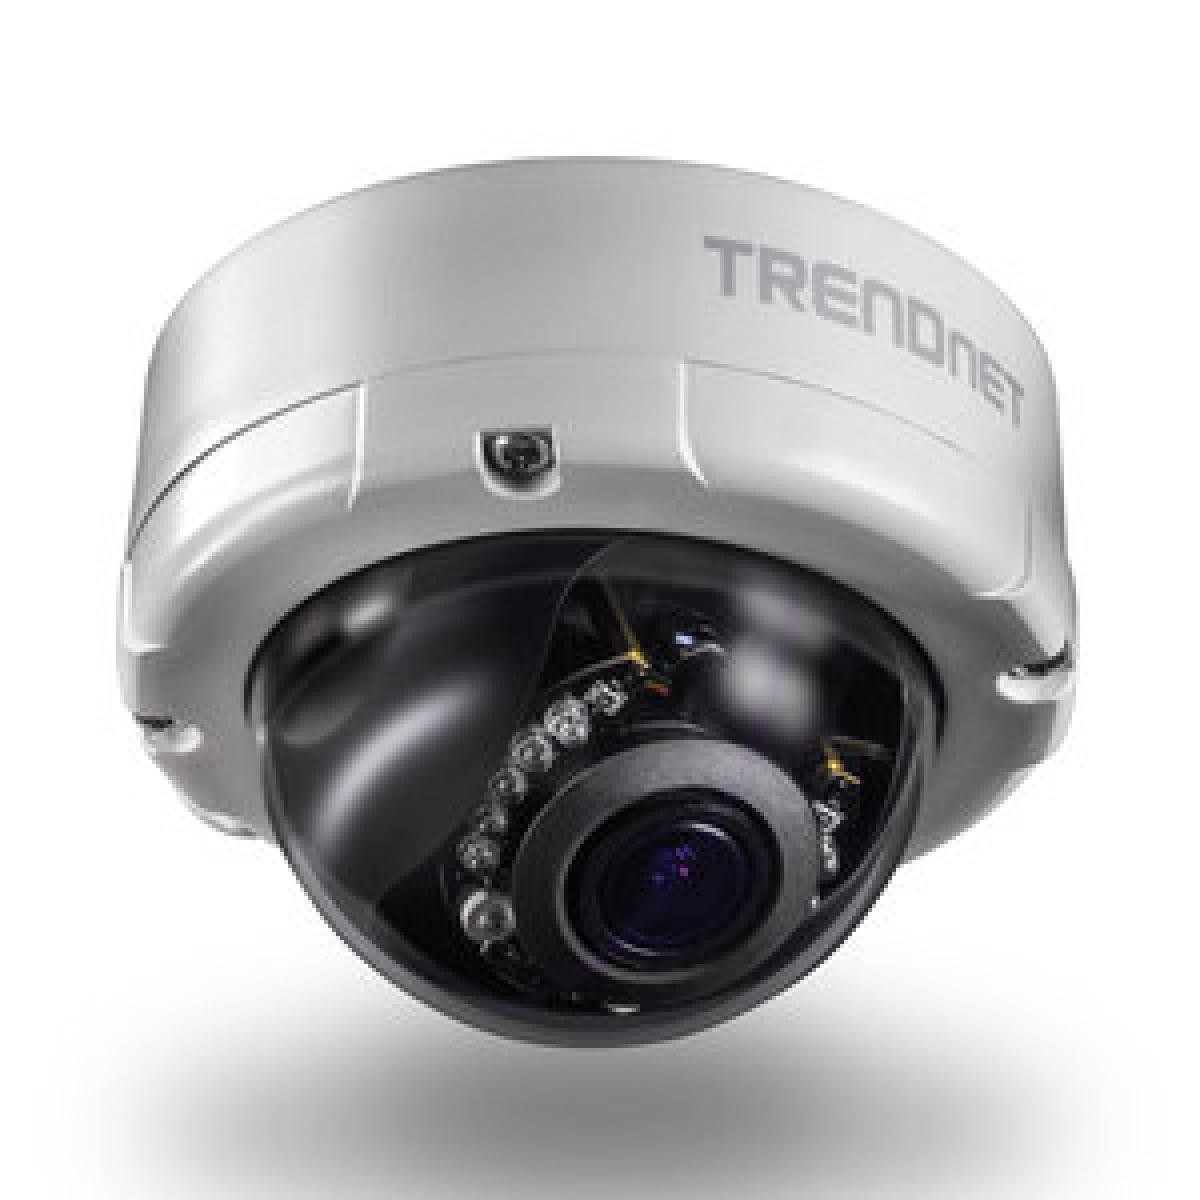 Trendnet - TRENDNET TV-IP345PI - Caméra de surveillance connectée